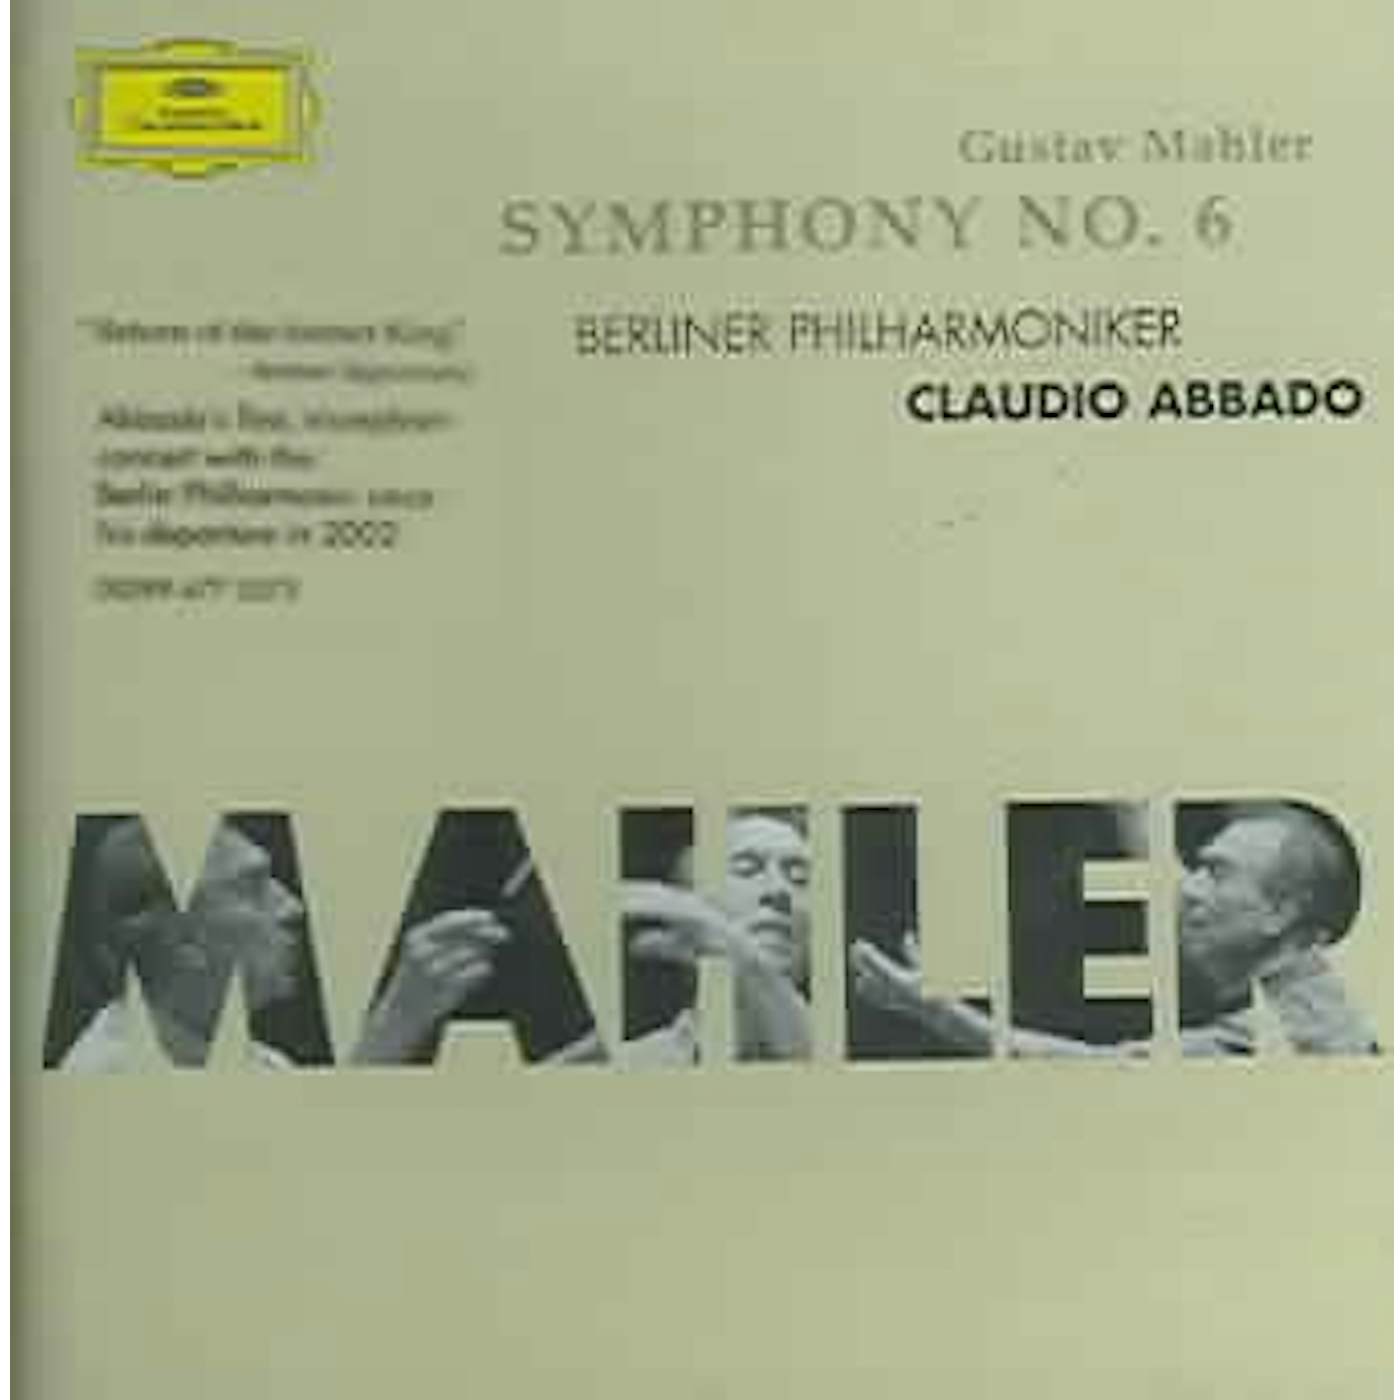 Gustav Mahler Symphony 6 CD